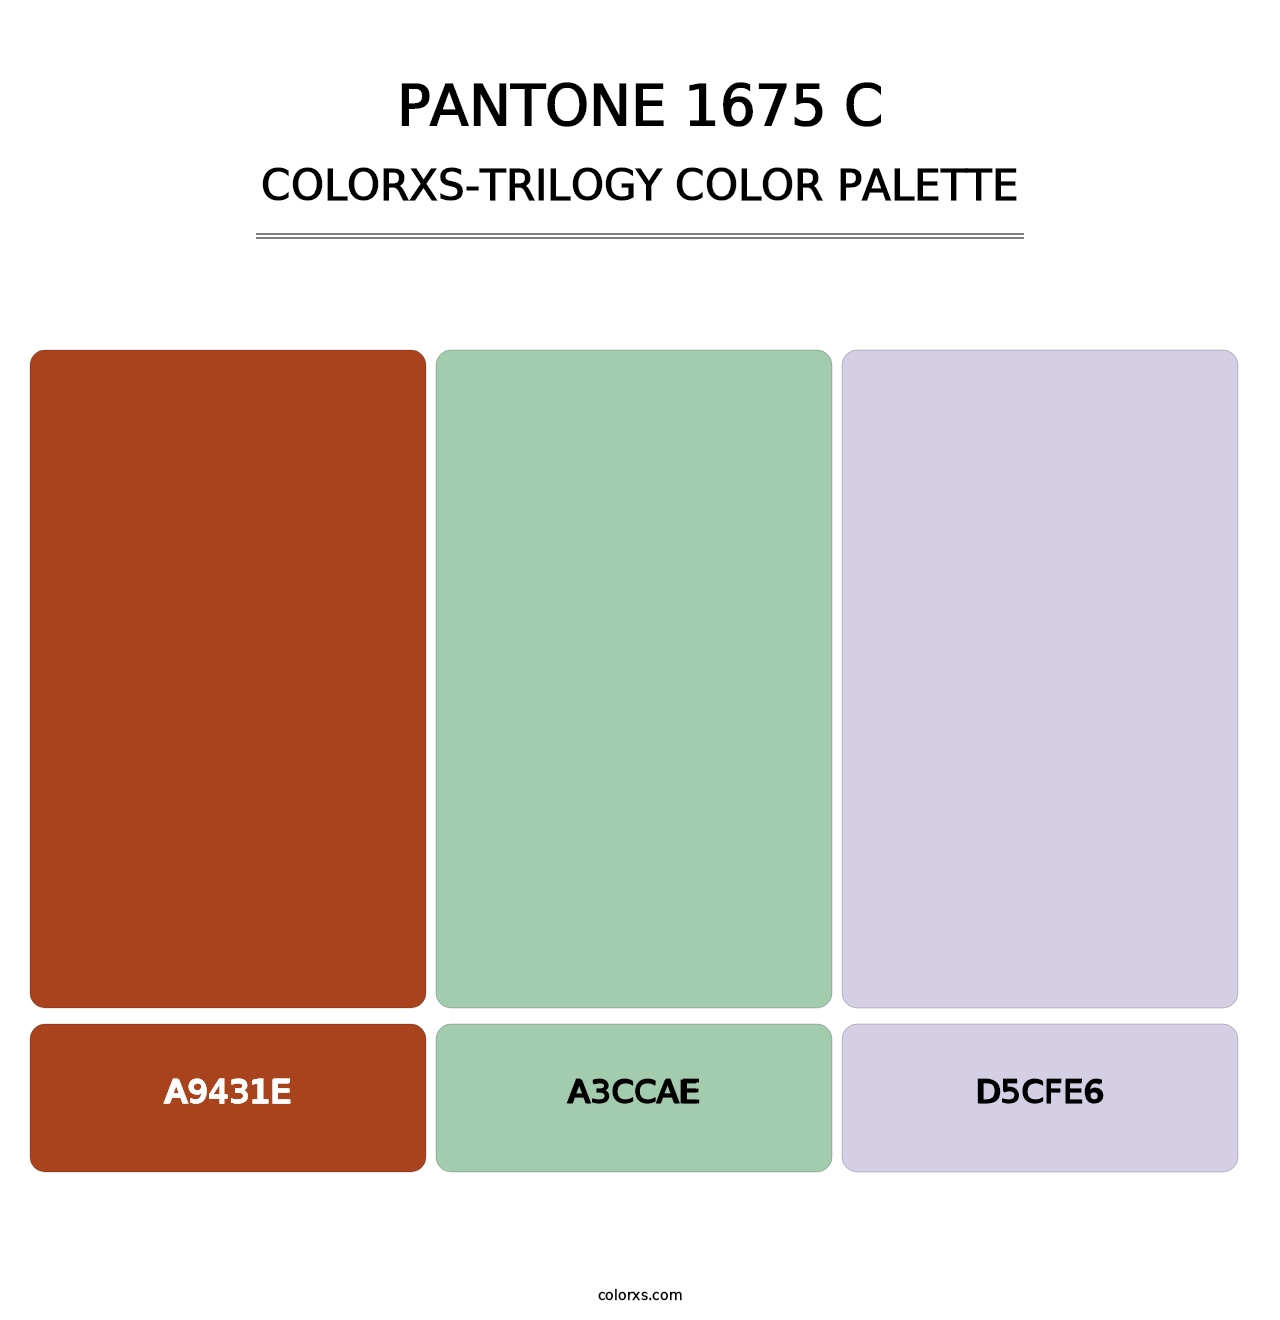 PANTONE 1675 C - Colorxs Trilogy Palette